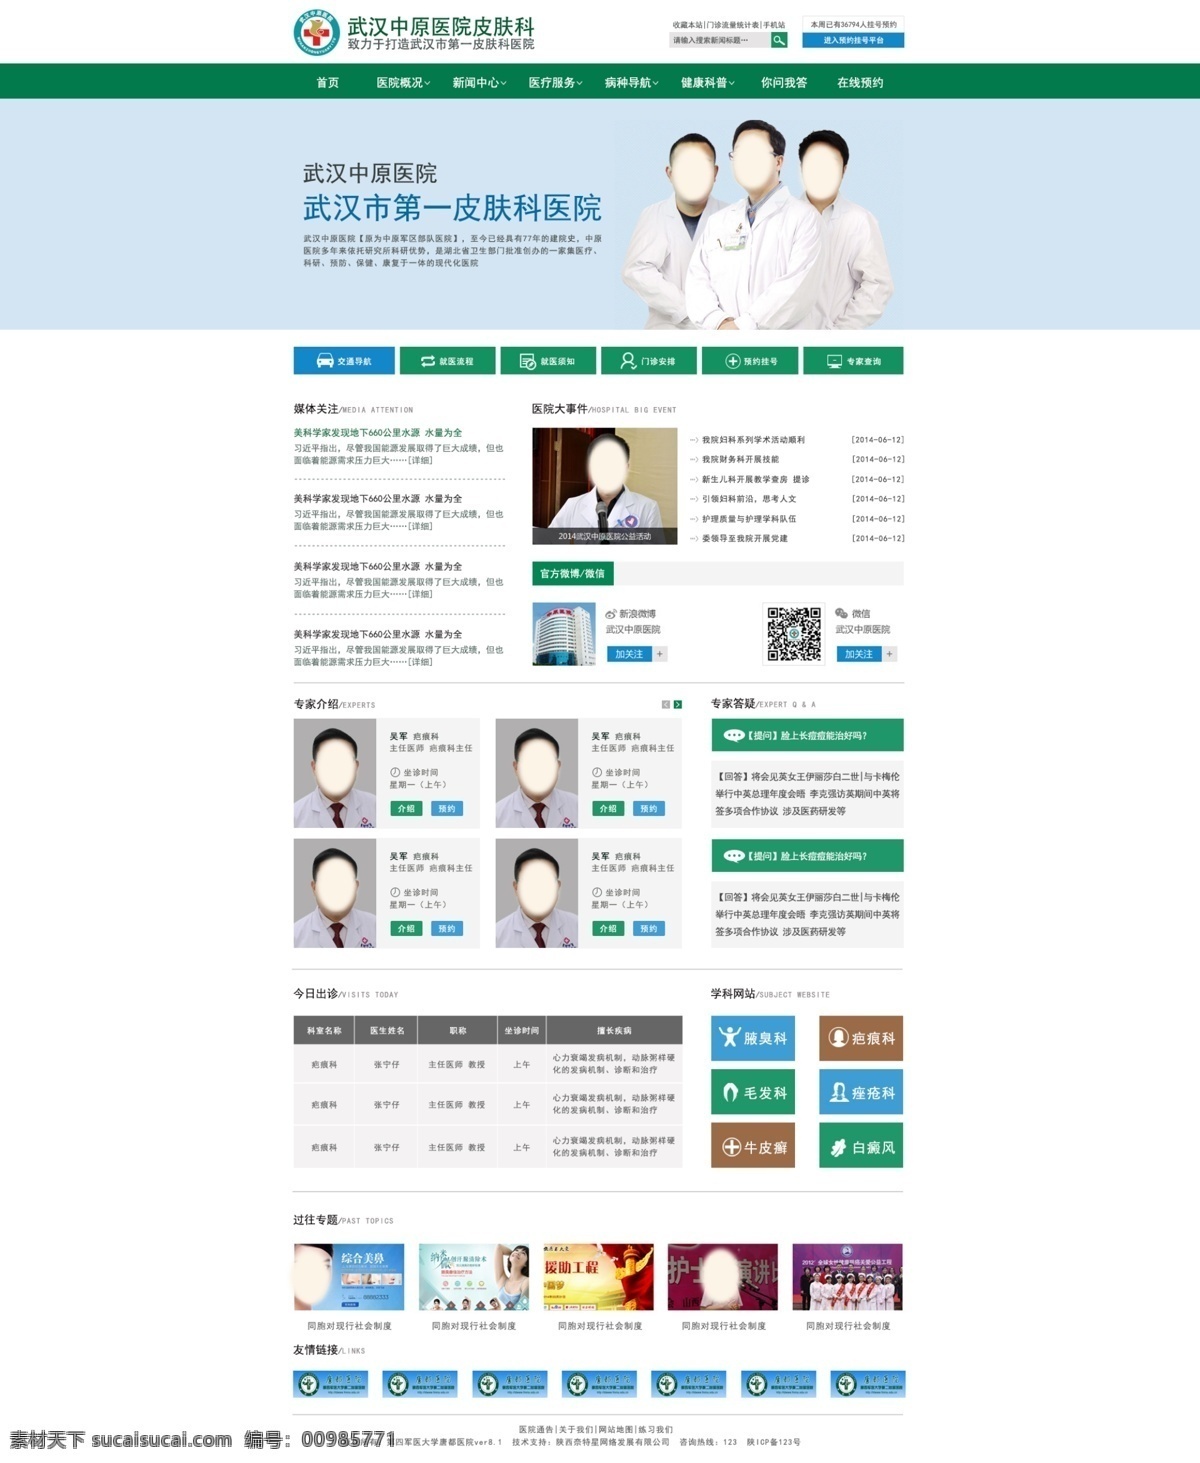 医疗网站 医疗 网页设计 简约大方 医院 绿色调 白色